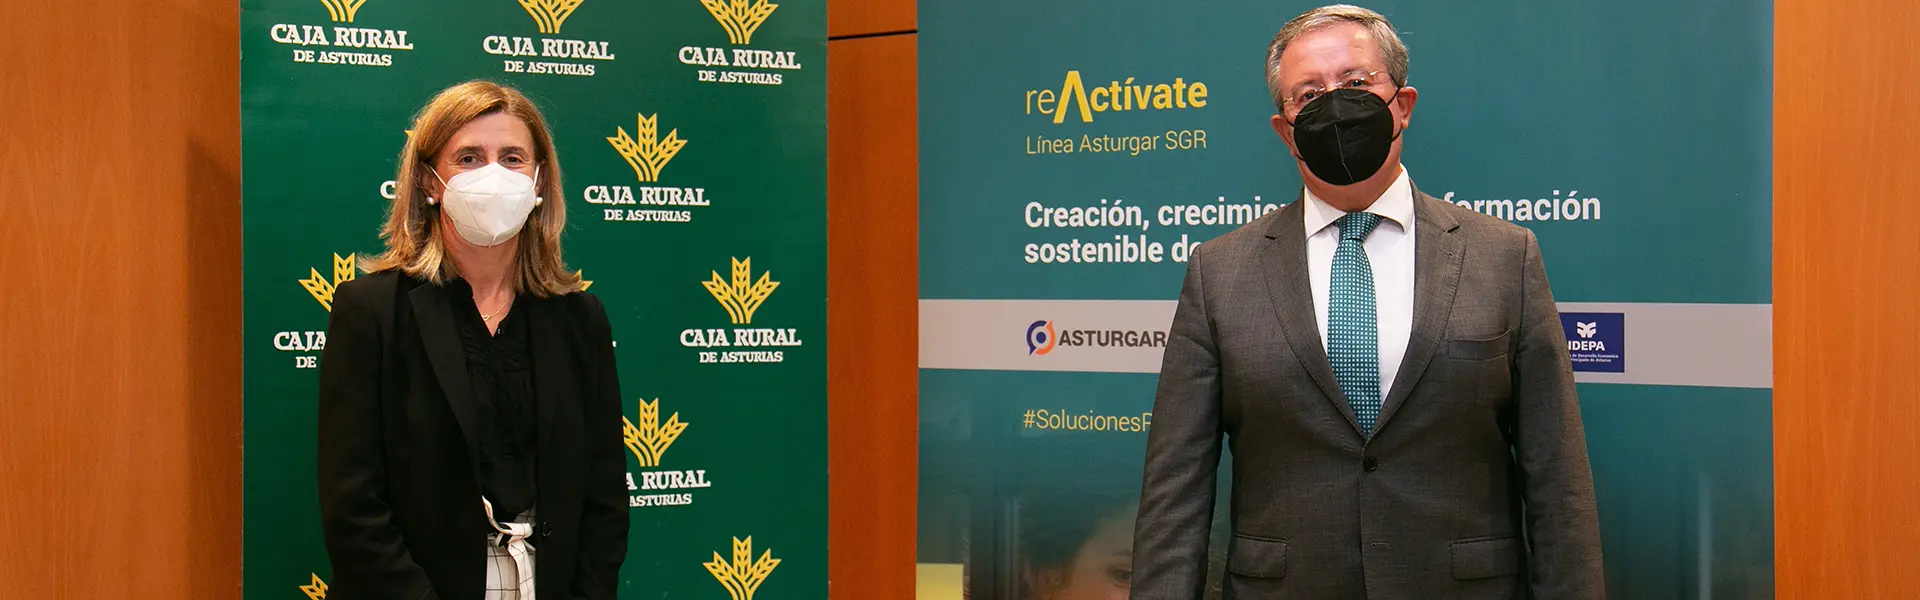 Asturgar y Caja Rural amplían su convenio de colaboración con las nuevas líneas reActívate ultimas noticias